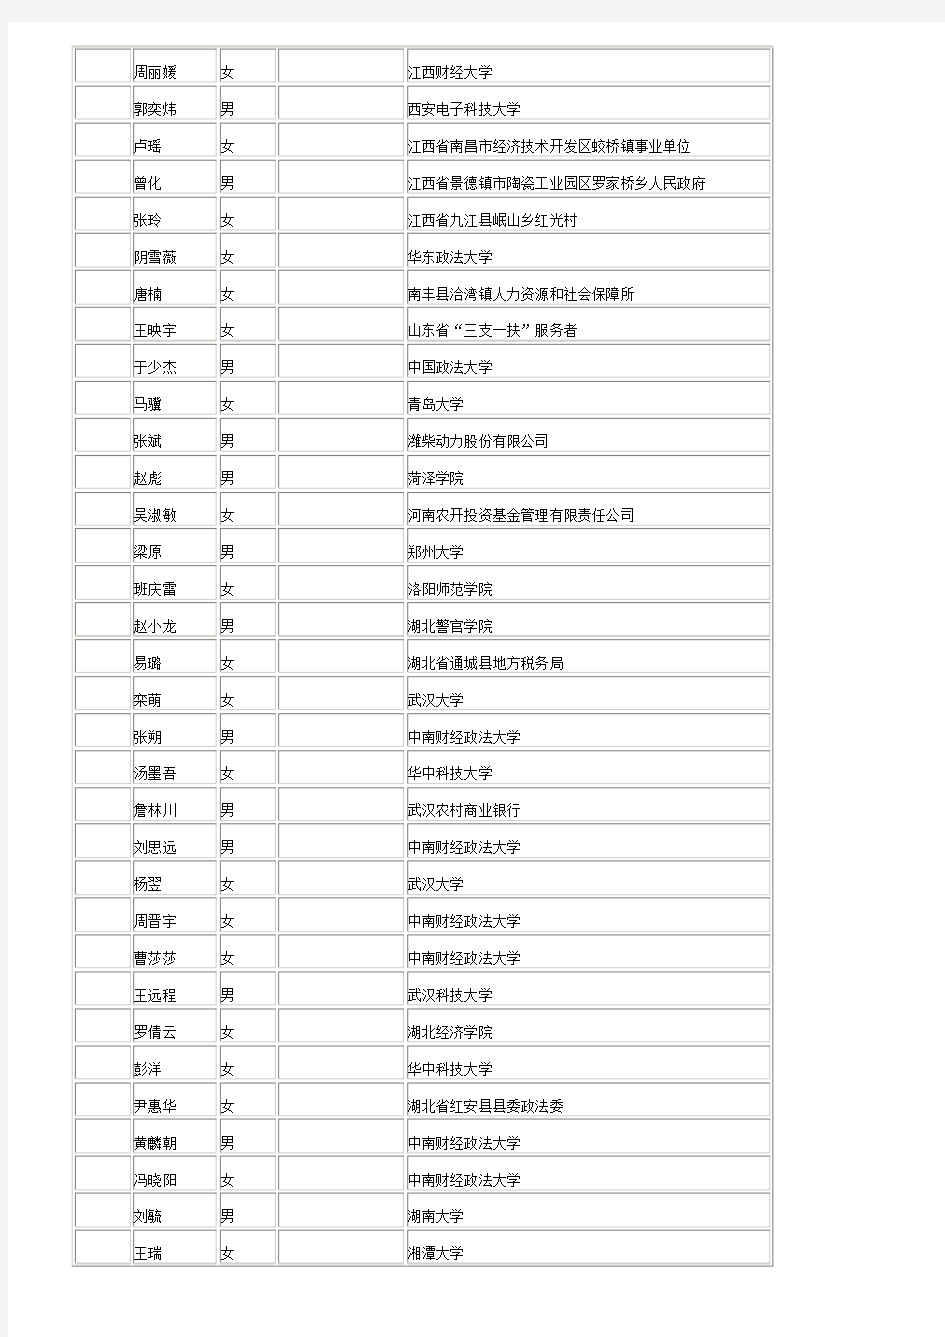 深圳市国家税务局系统2014年拟录用公务员公示